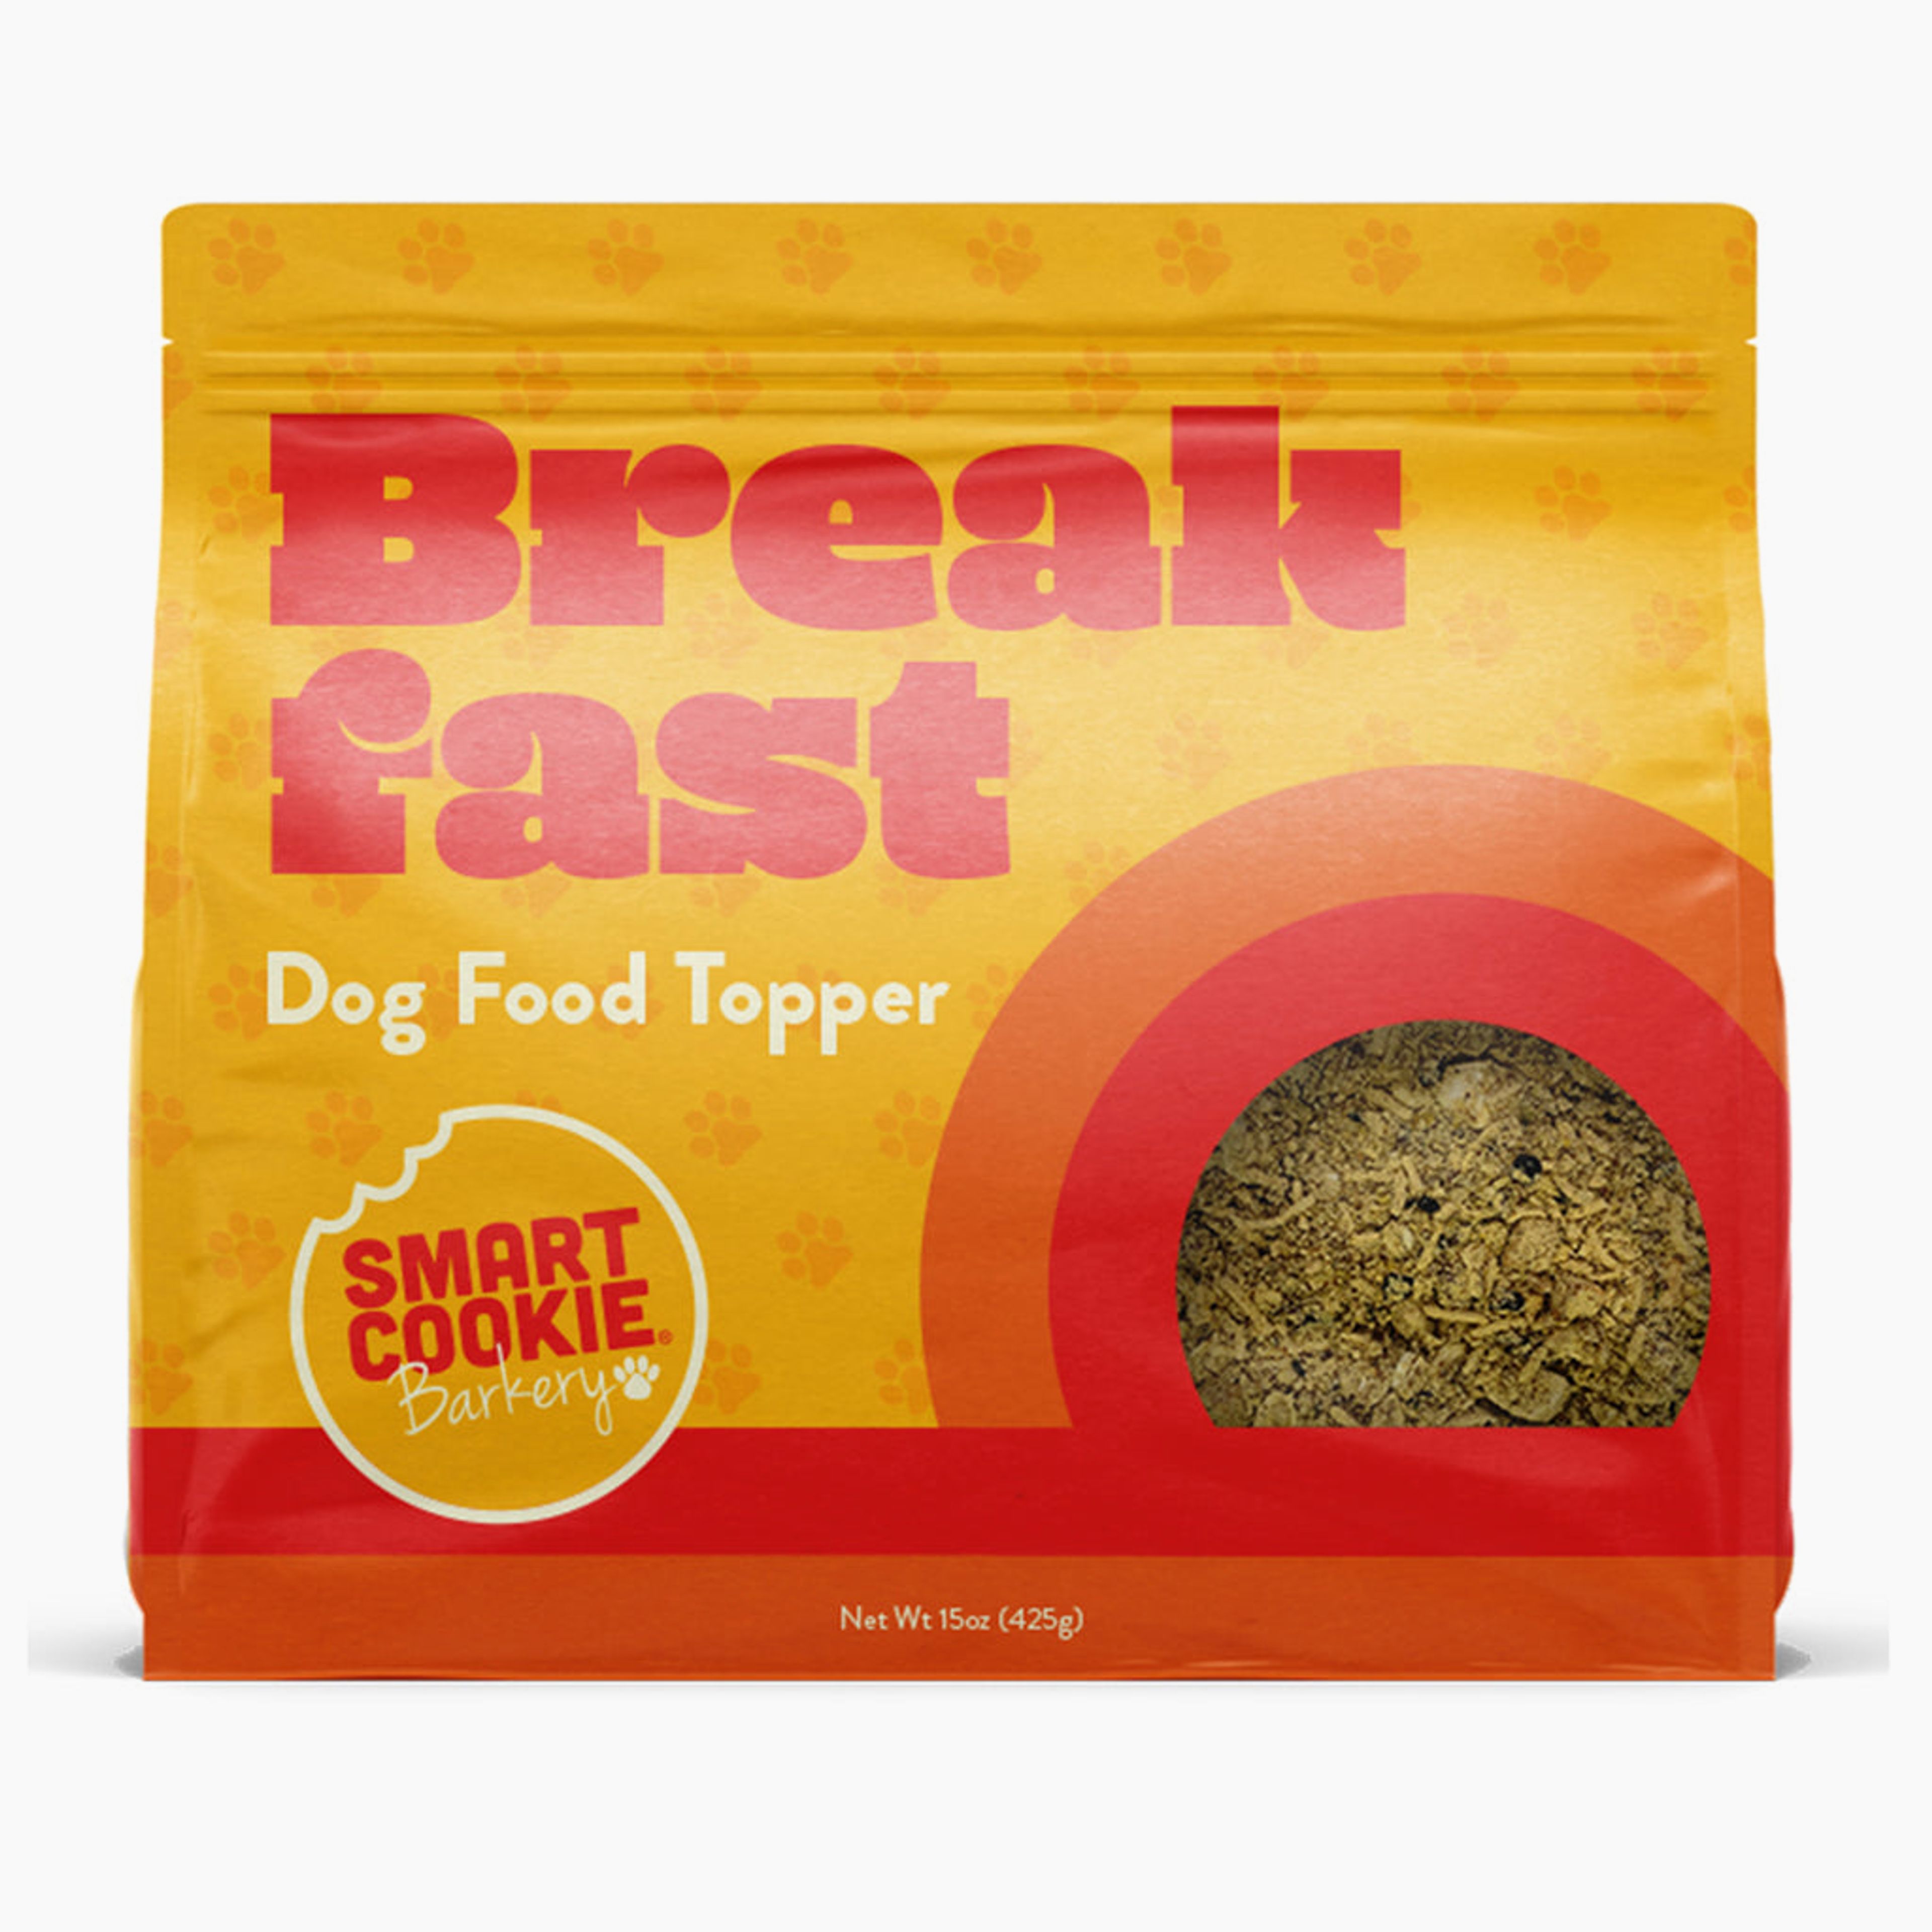 Breakfast Dog Food Topper